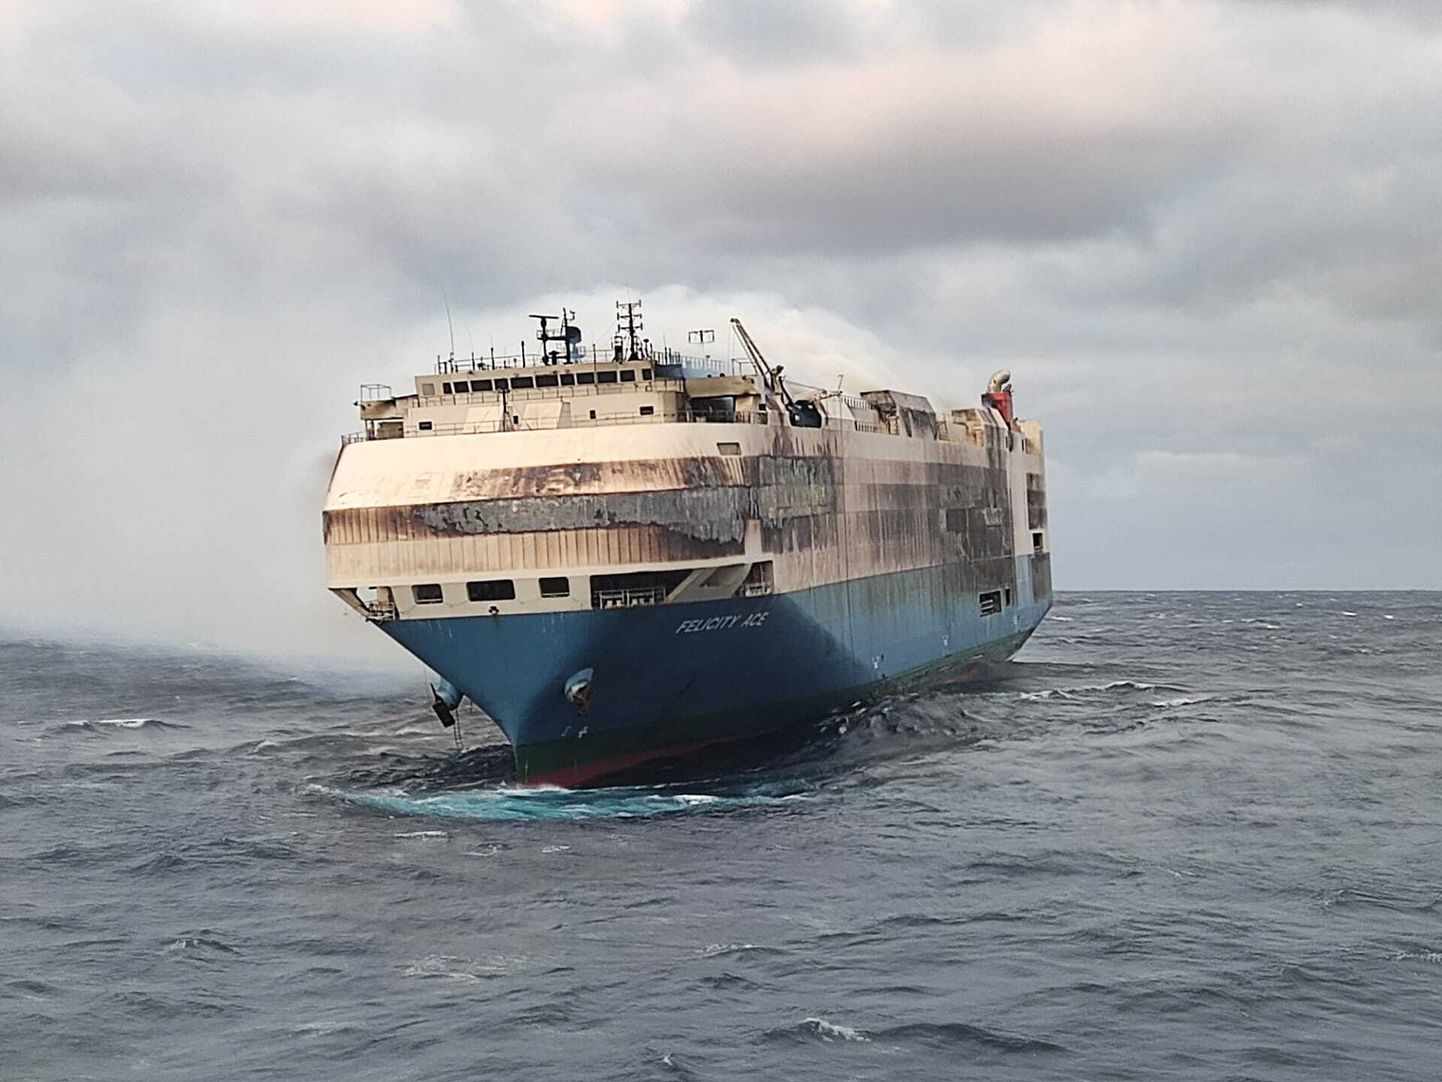 Atlandi ookeanil põlev autoveolaev Felicity Ace loodetakse pärast tulekahju kustutamist pukseerida sadamasse. Enne päästetööde lõppu pole teada, kas laeva hakatakse vedama Euroopa või Ameerika suunas.